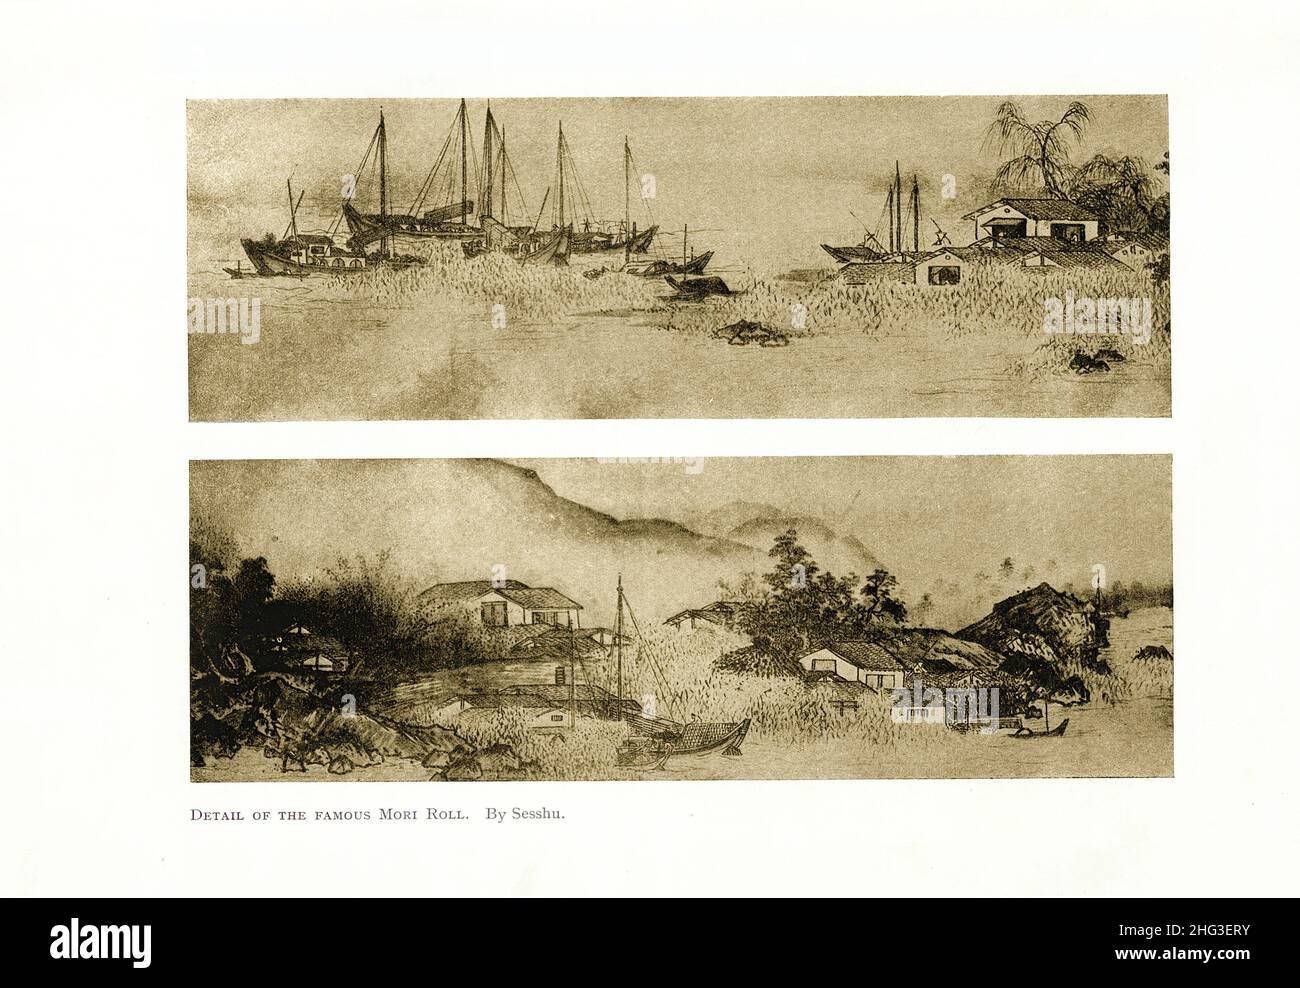 Peinture médiévale japonaise : détail du célèbre Mori Roll.Par Sesshu.Reproduction de l'illustration du livre de 1912 Sesshū Tōyō (connu sous le nom d'Oda Tōyō, Unkok Banque D'Images